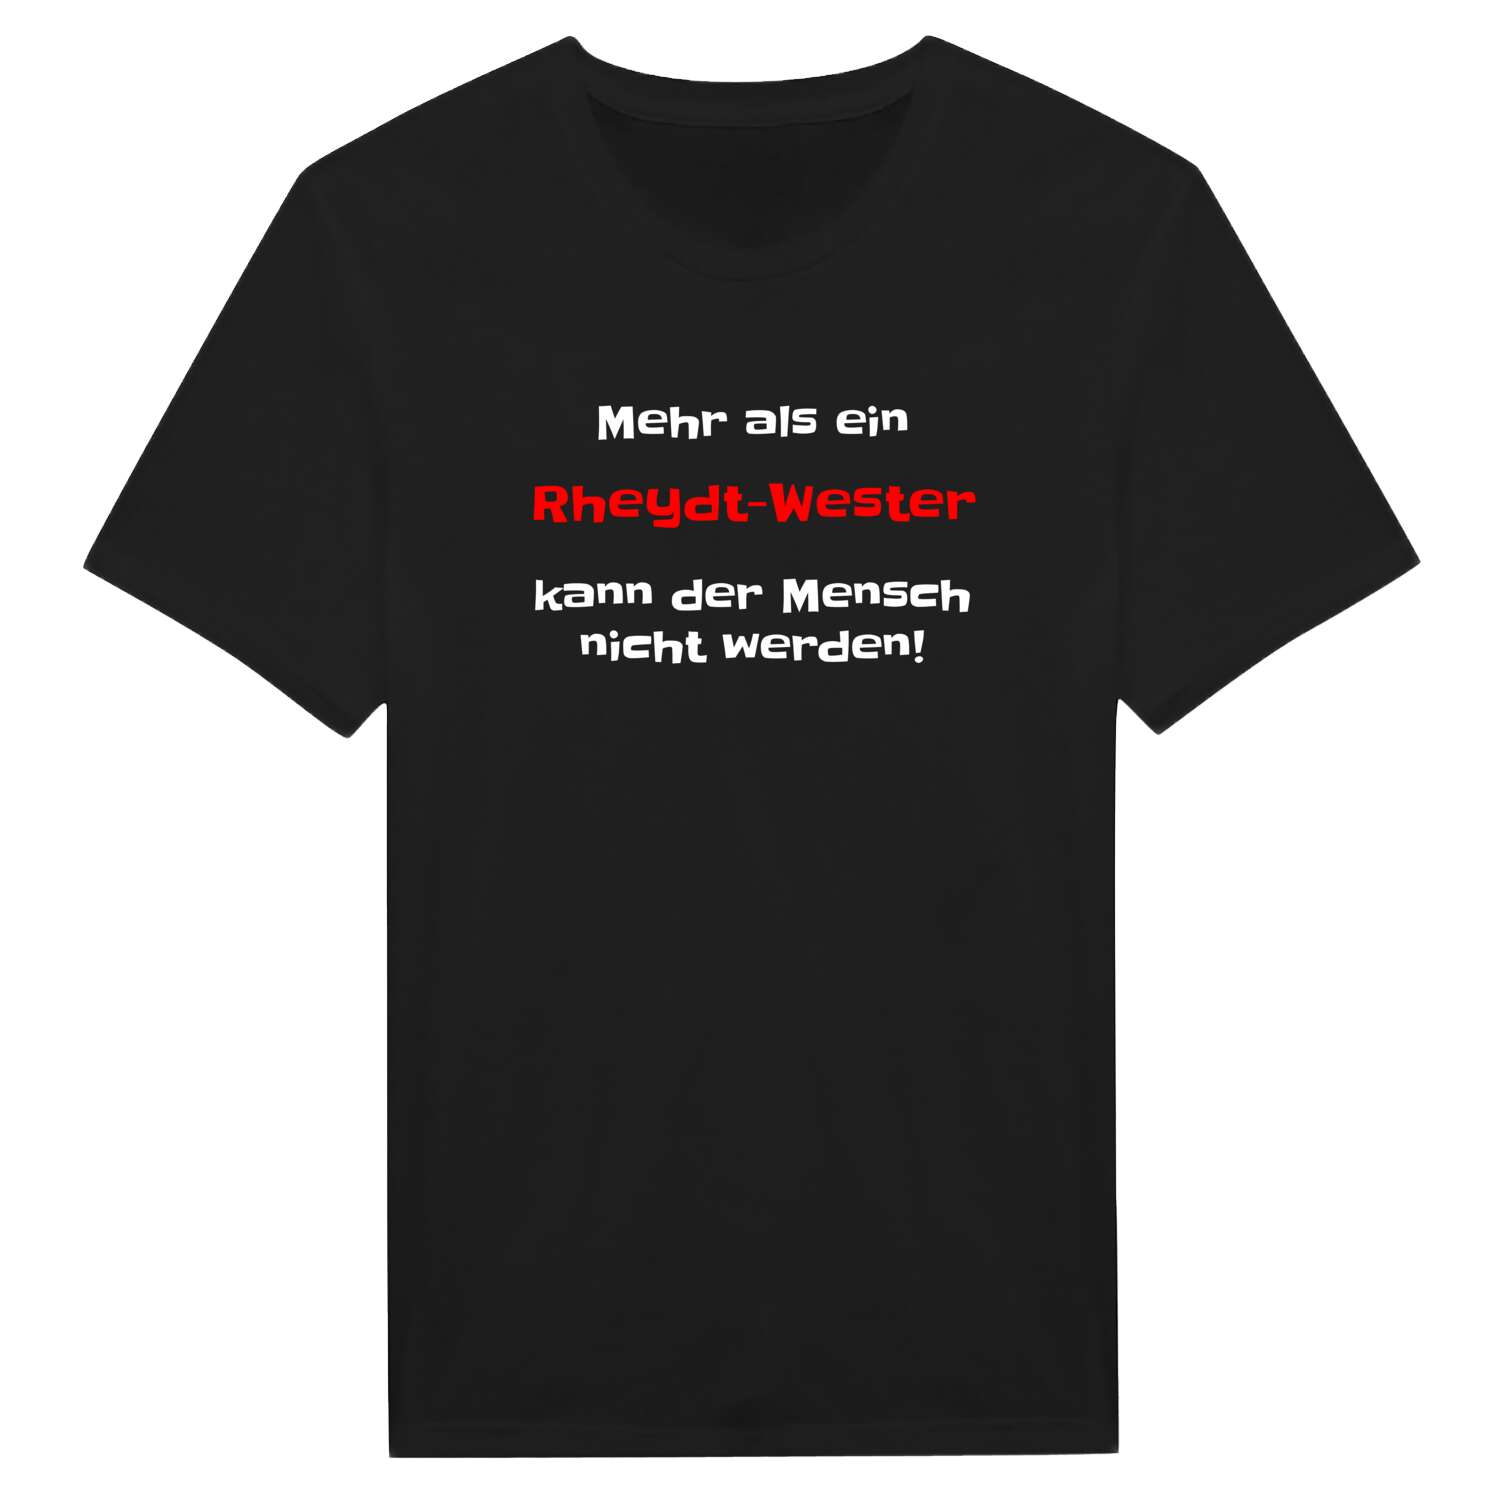 Rheydt-West T-Shirt »Mehr als ein«